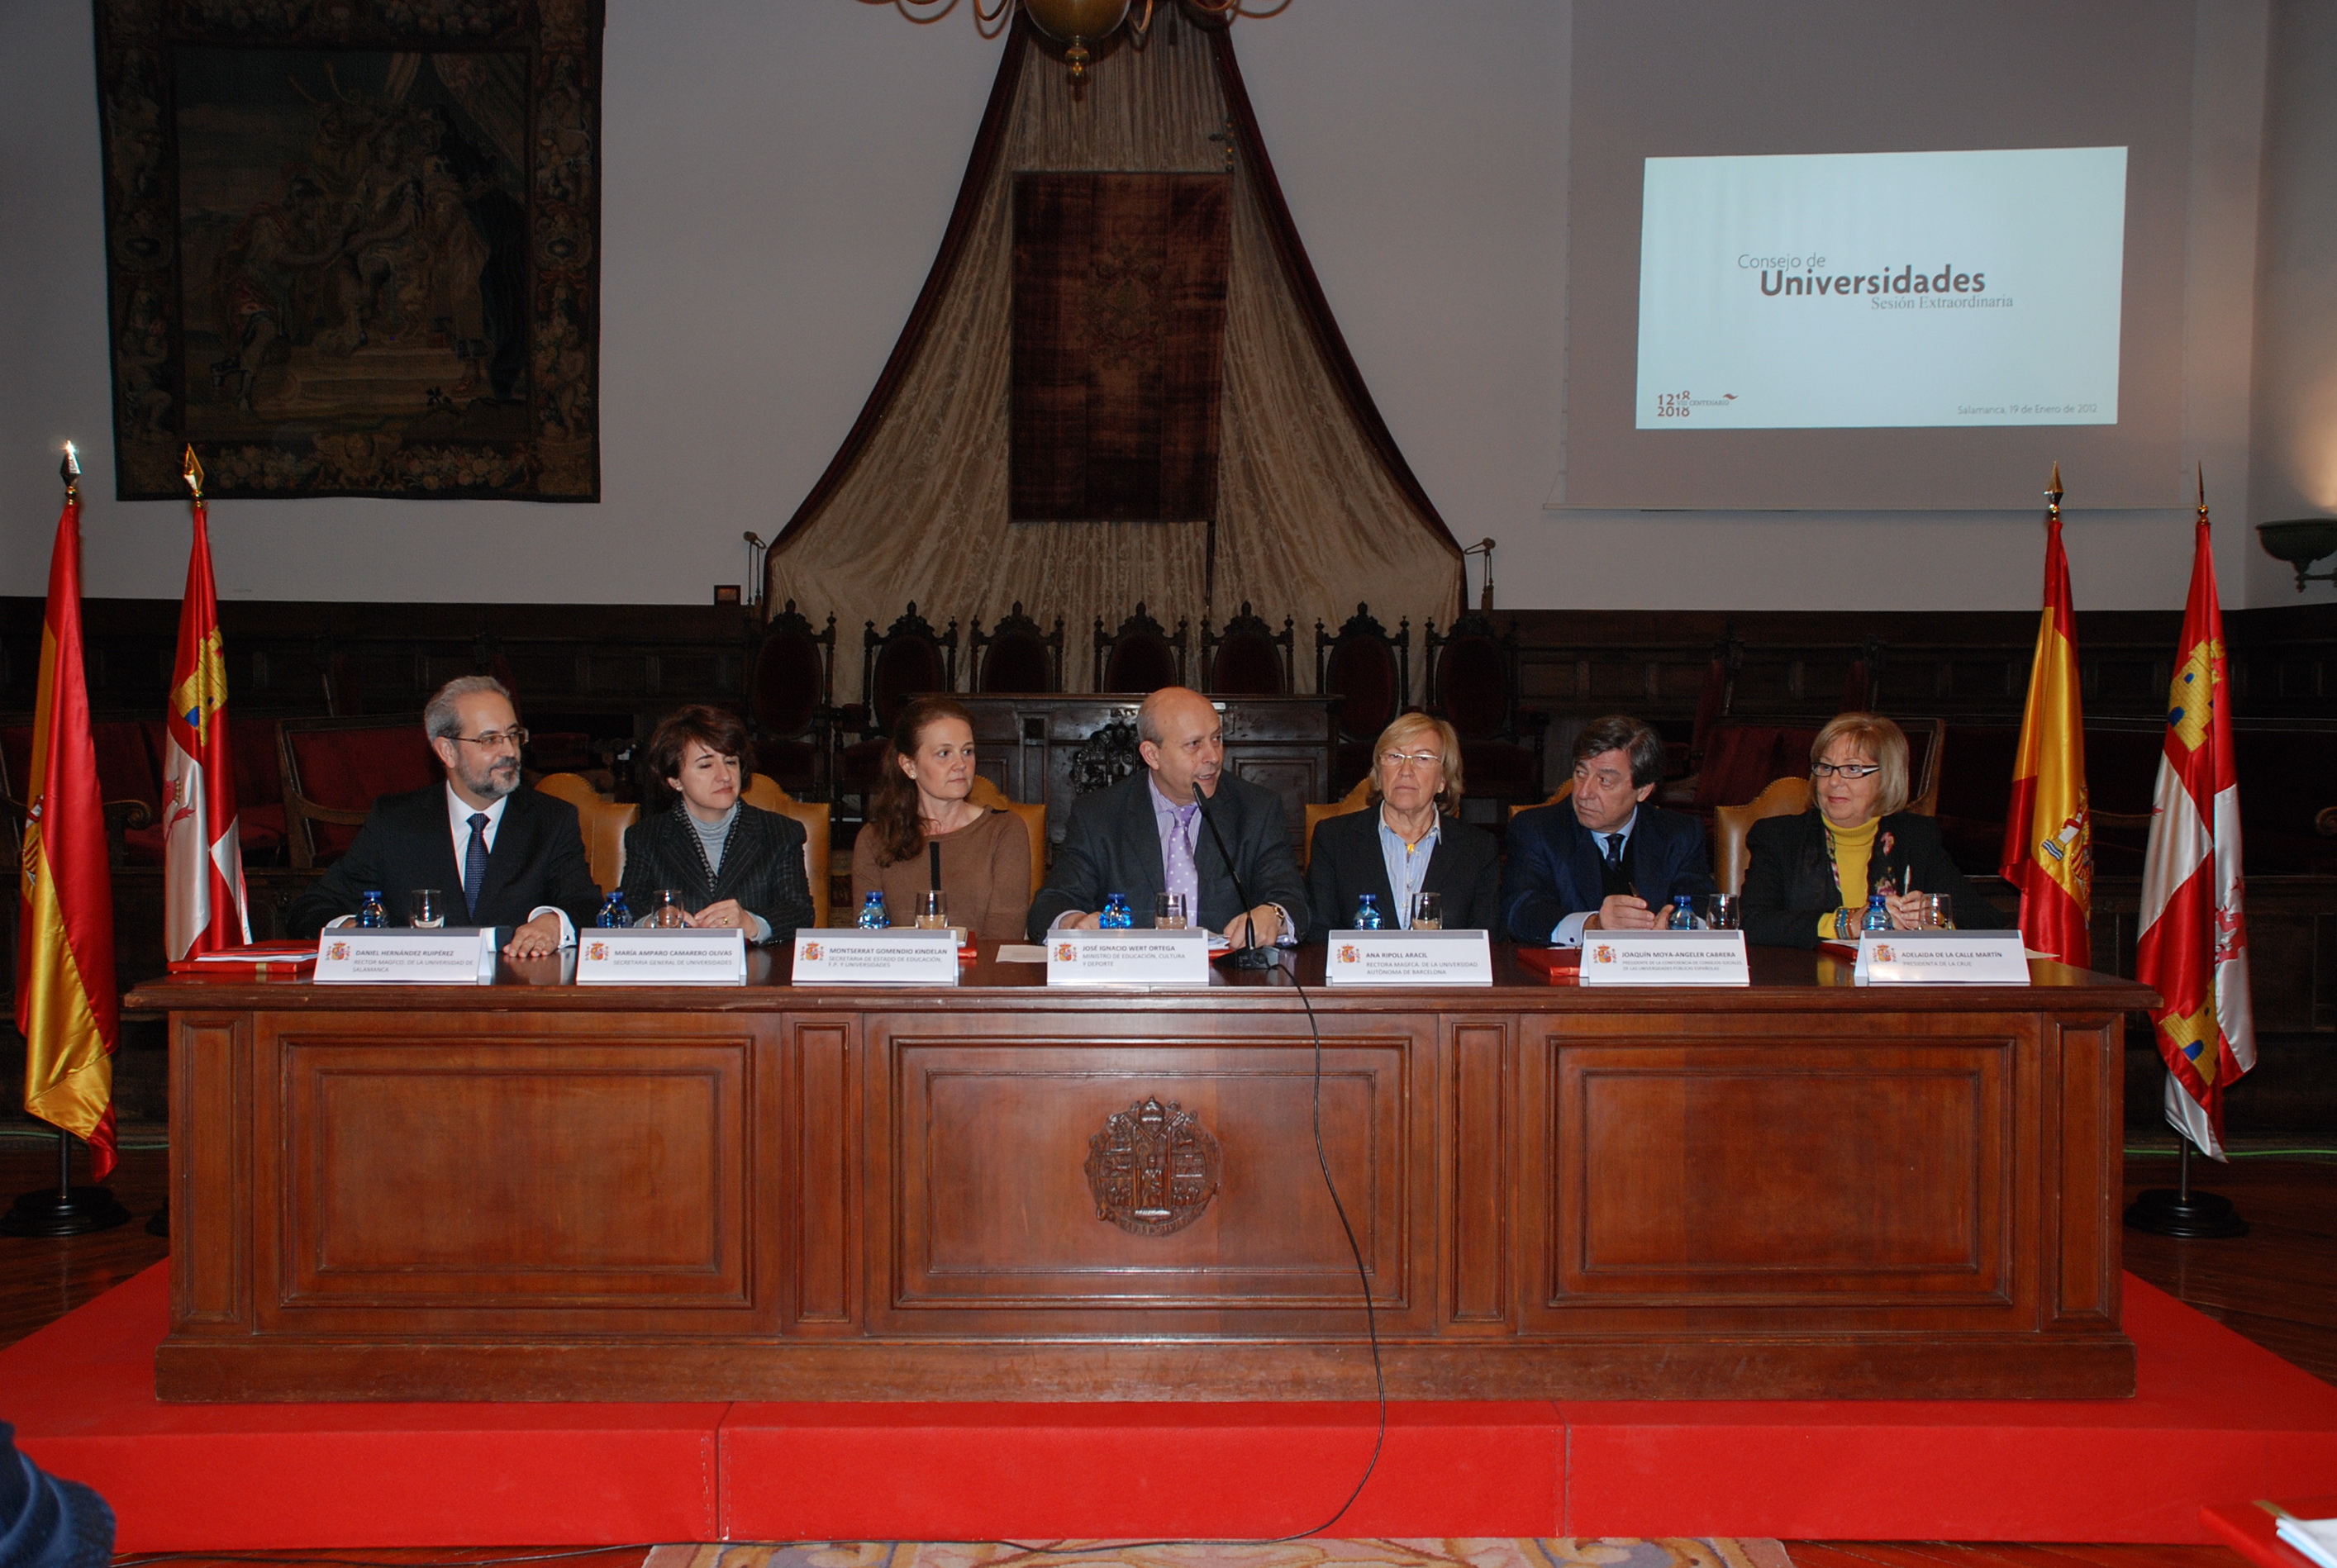 Pleno del Consejo de Universidades en la Universidad de Salamanca presidido ministro de Educación, José Ignacio Wert